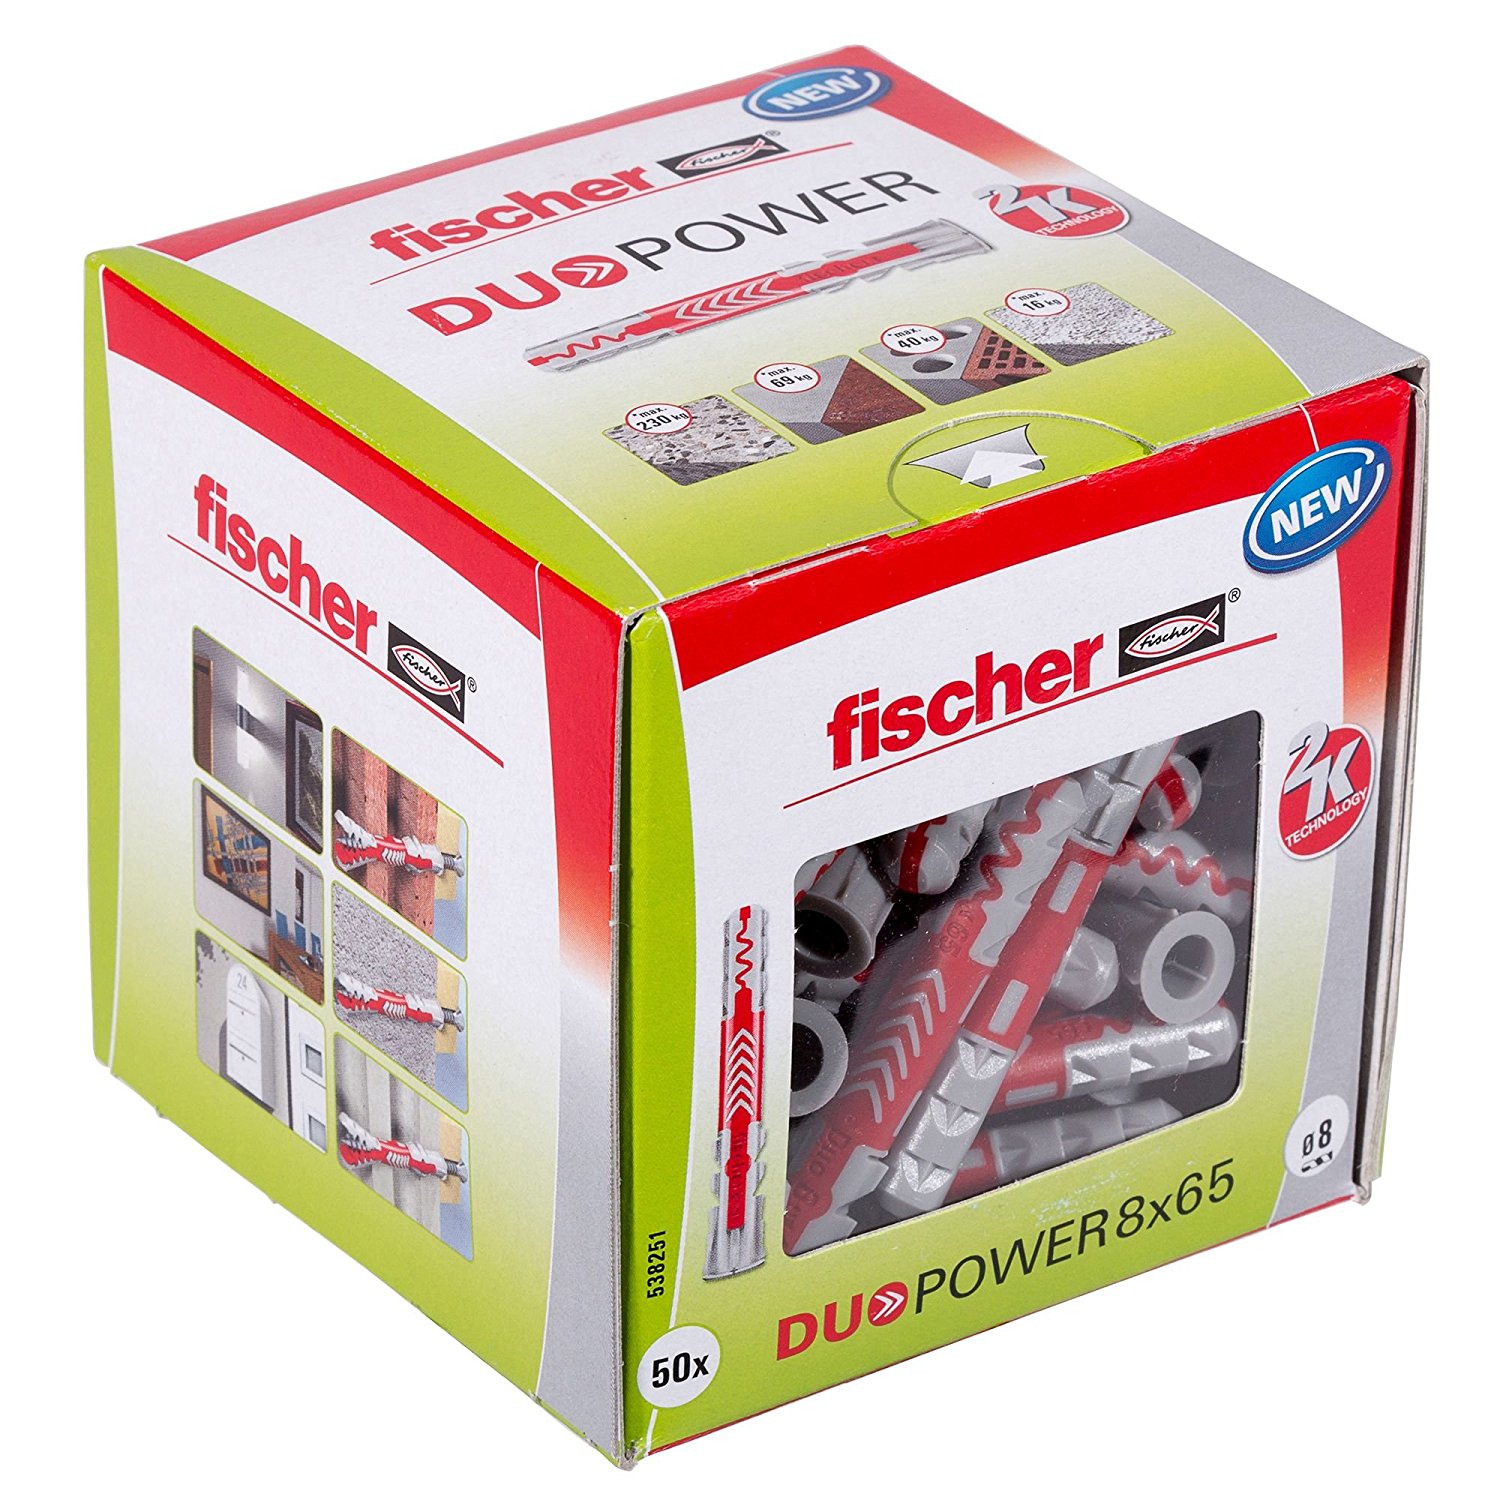 Fischer DUOPOWER 8x65 LD 50pcs